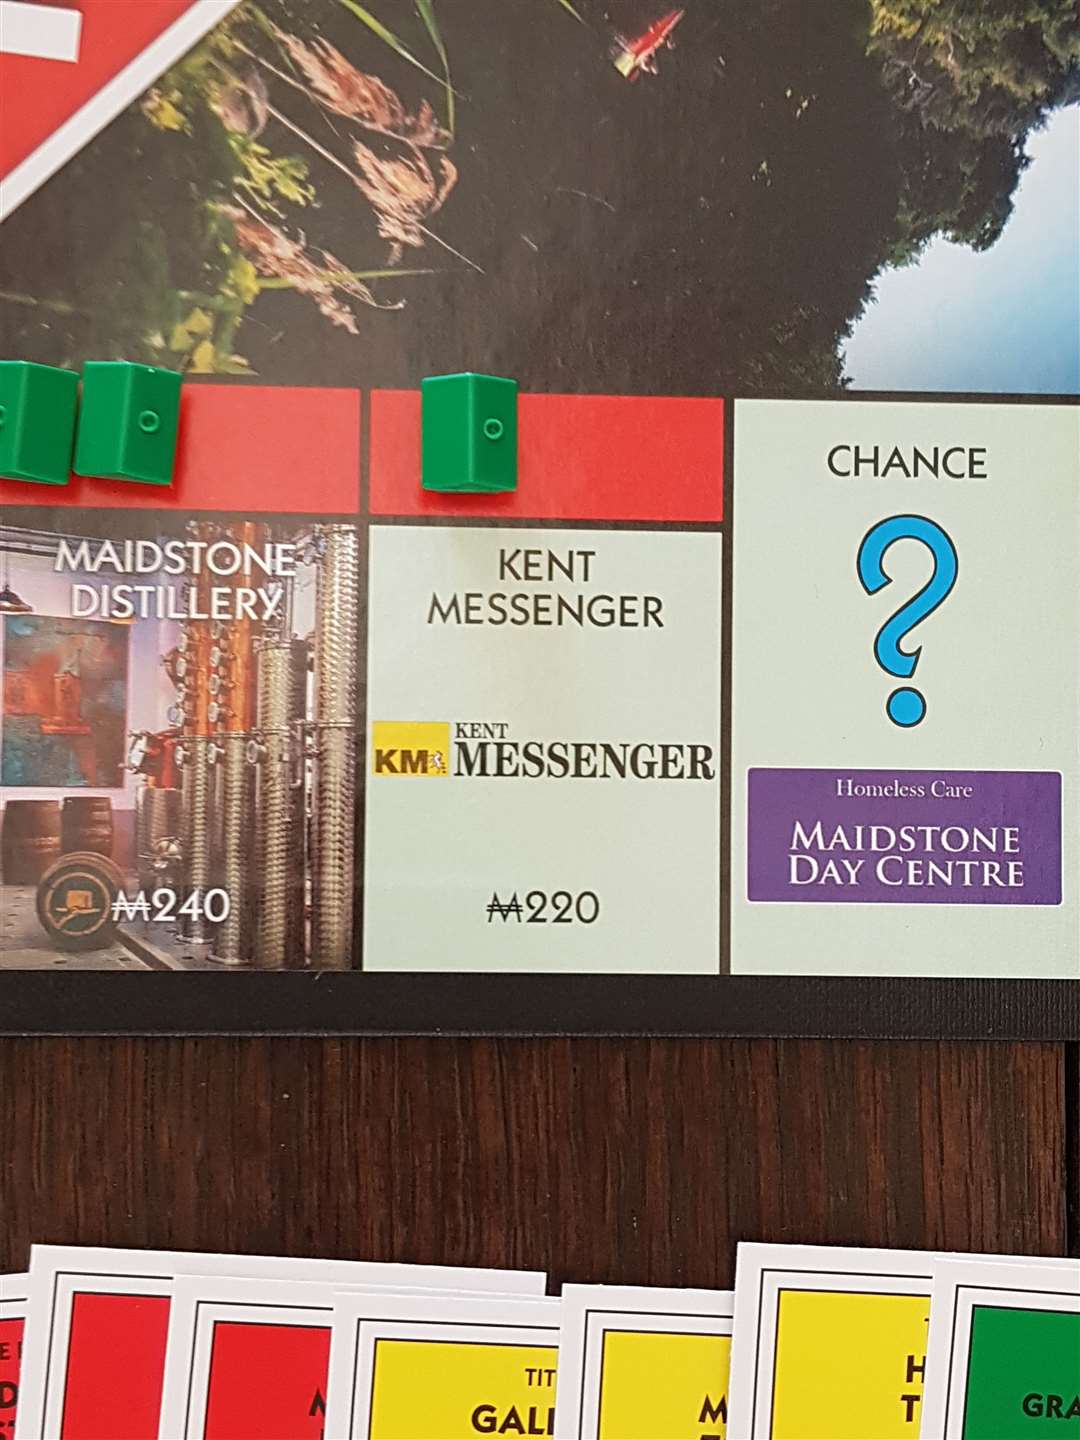 The Kent Messenger got a spot on the board as a chance card